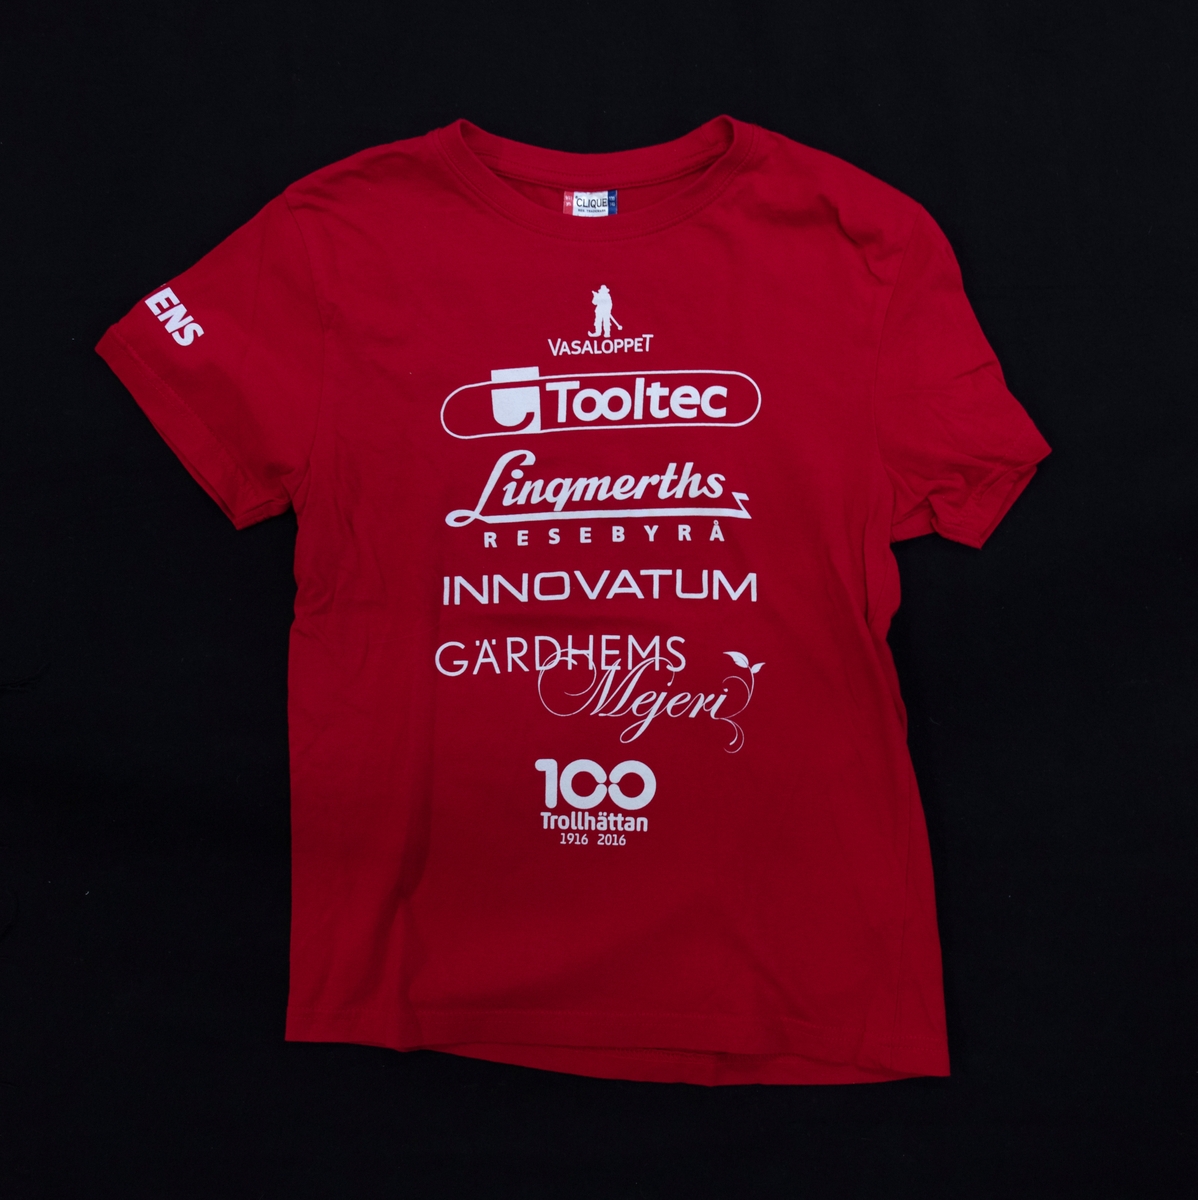 T-tröja, eller T-shirt, röd. Använd i skola i gymnastiken. 
Reklam är tryckt på tröjan från flera sponsorer.